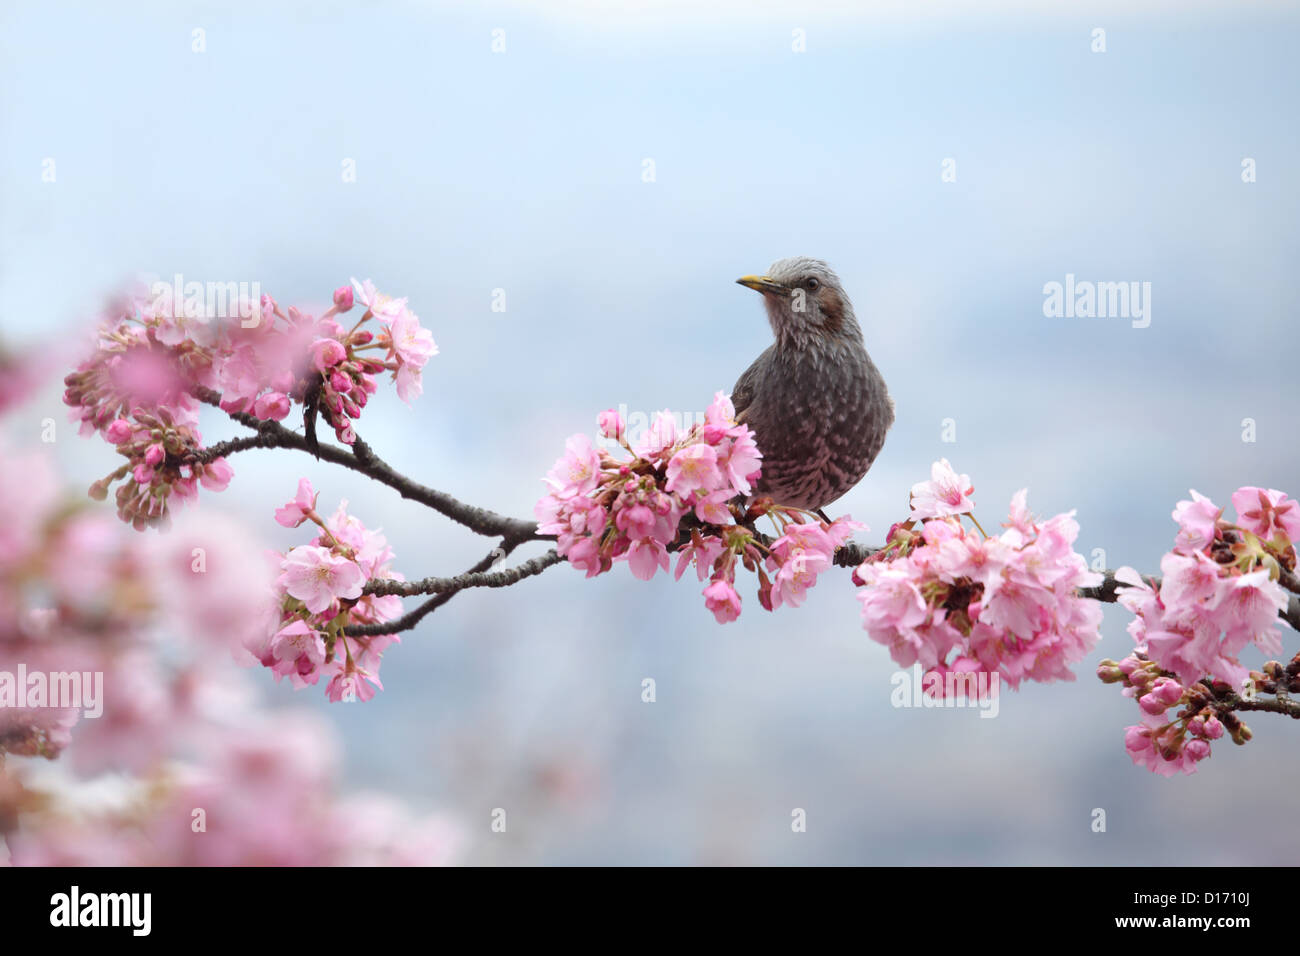 Wild Bird su Cherry Tree ramo e fiori di ciliegio Foto Stock